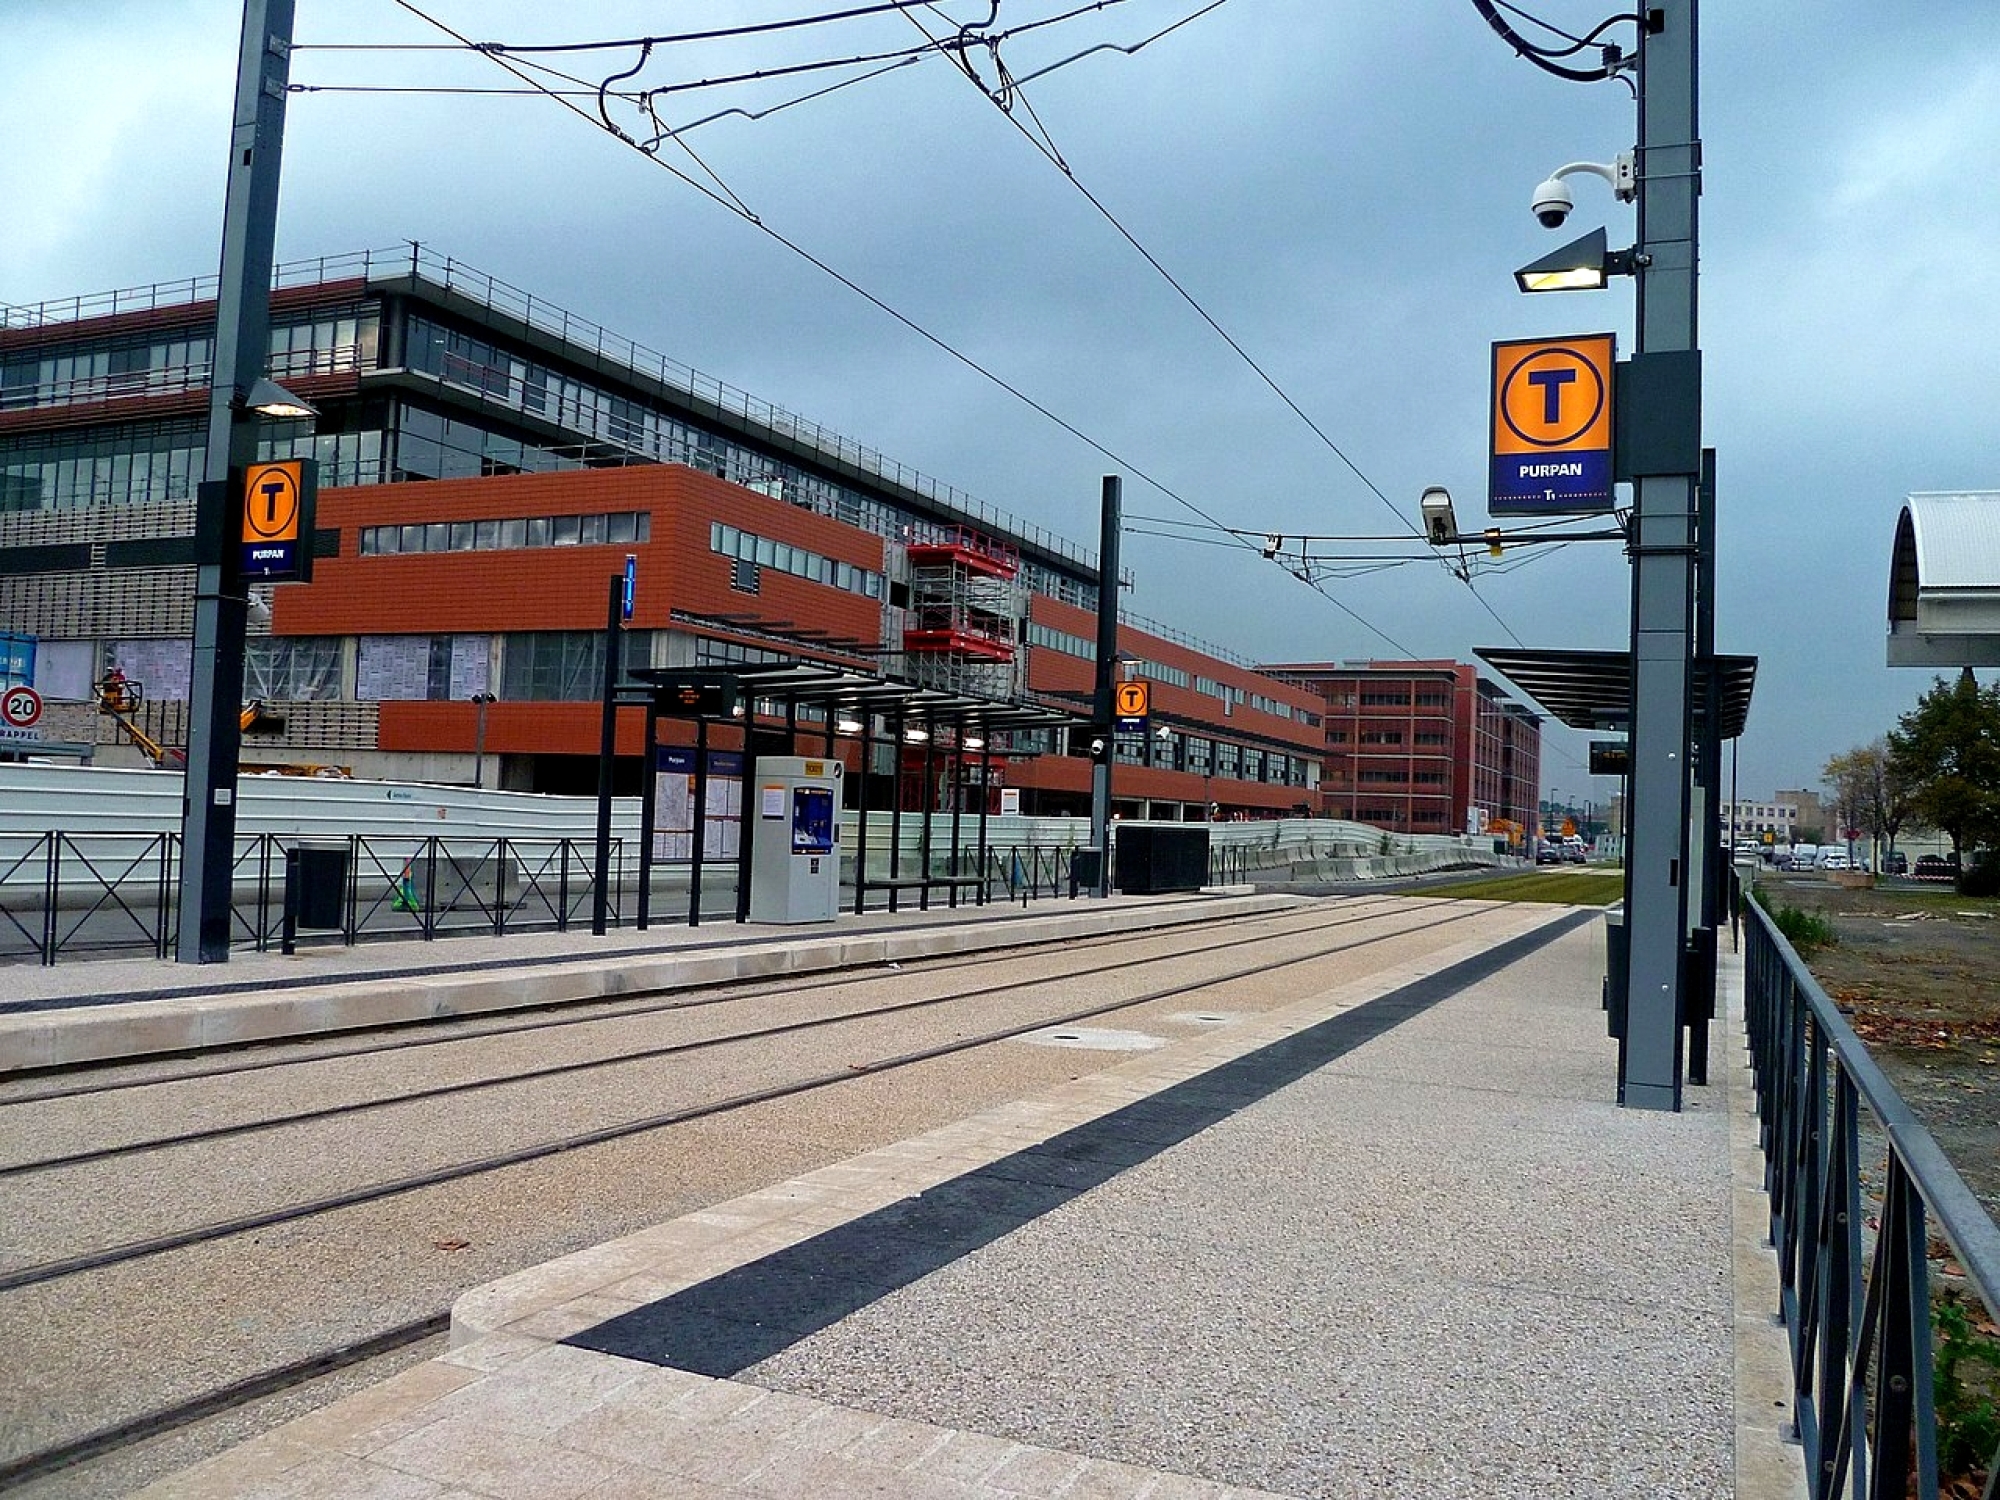 La station de tramway située en face de l'annexe du CHU de Purpan, l'hôpital Pierre-Paul Riquet